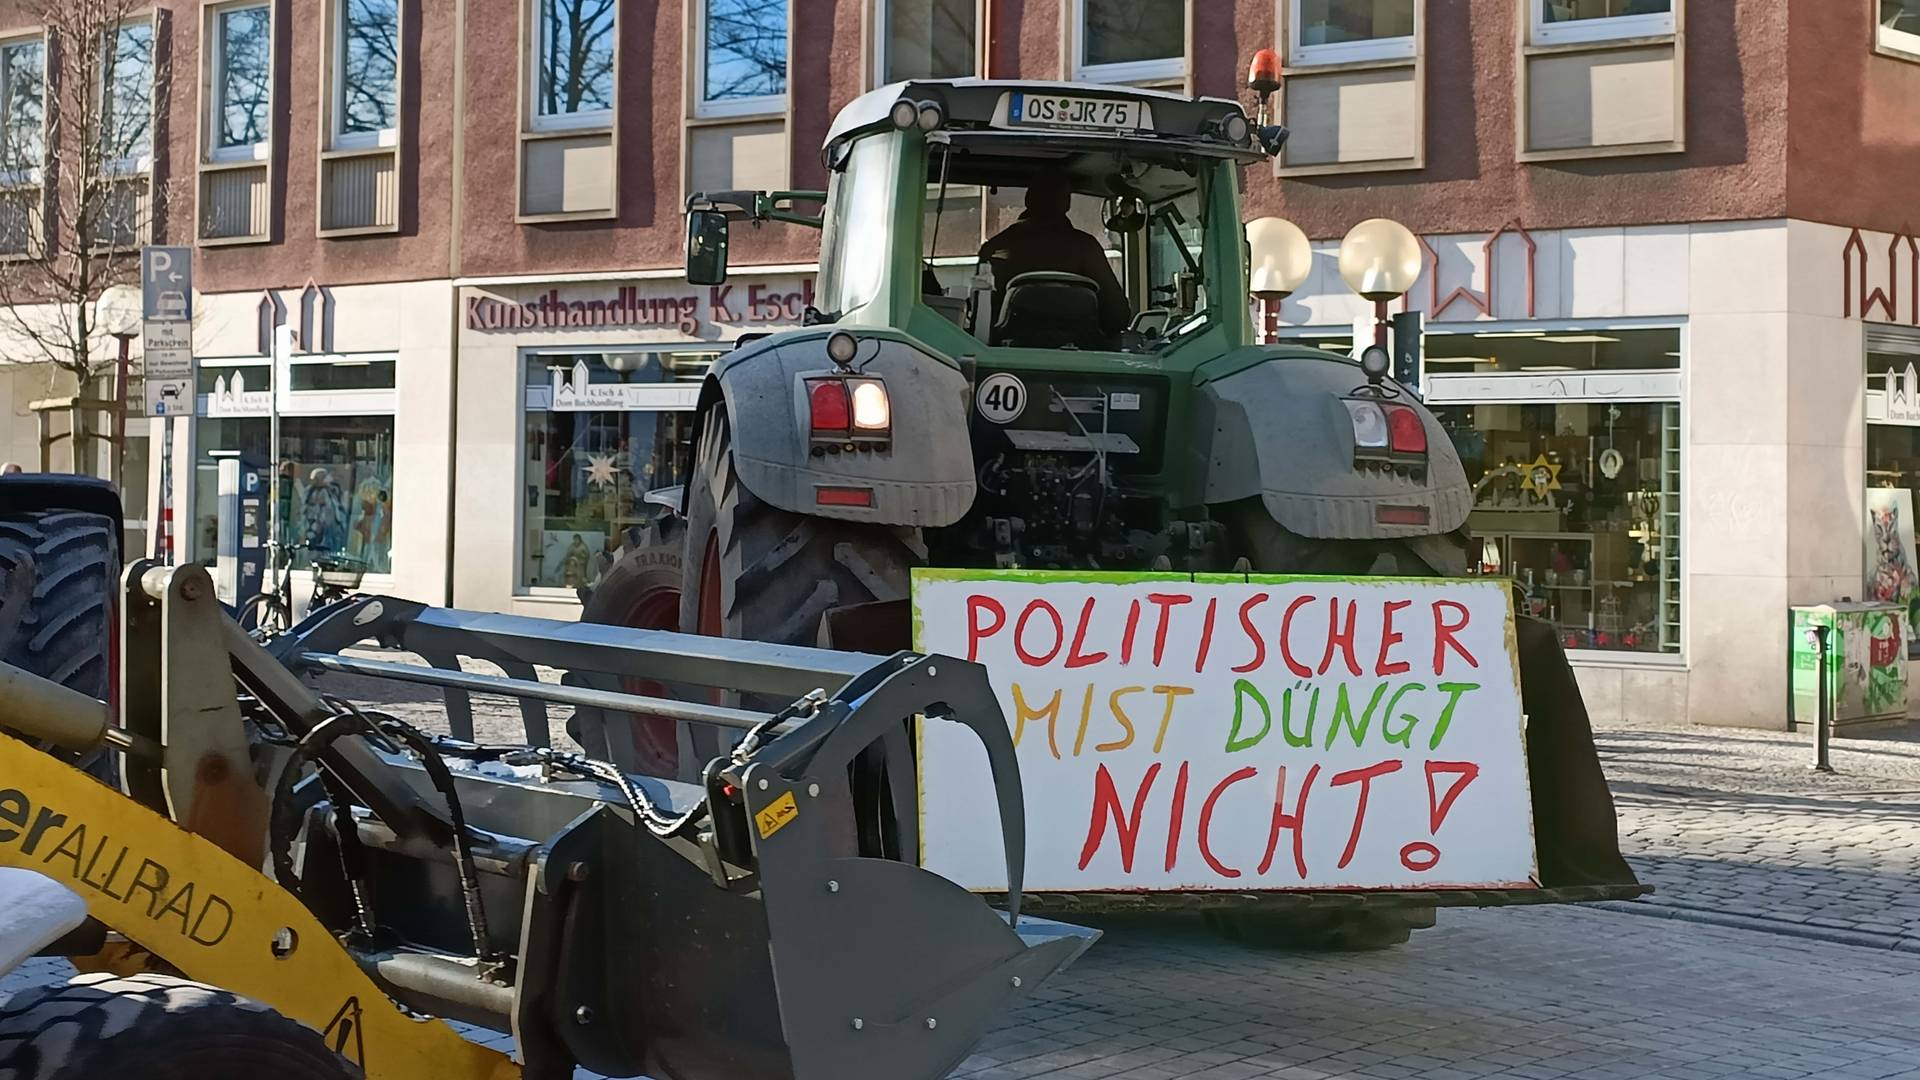 Демонстрация фермеров в Германии